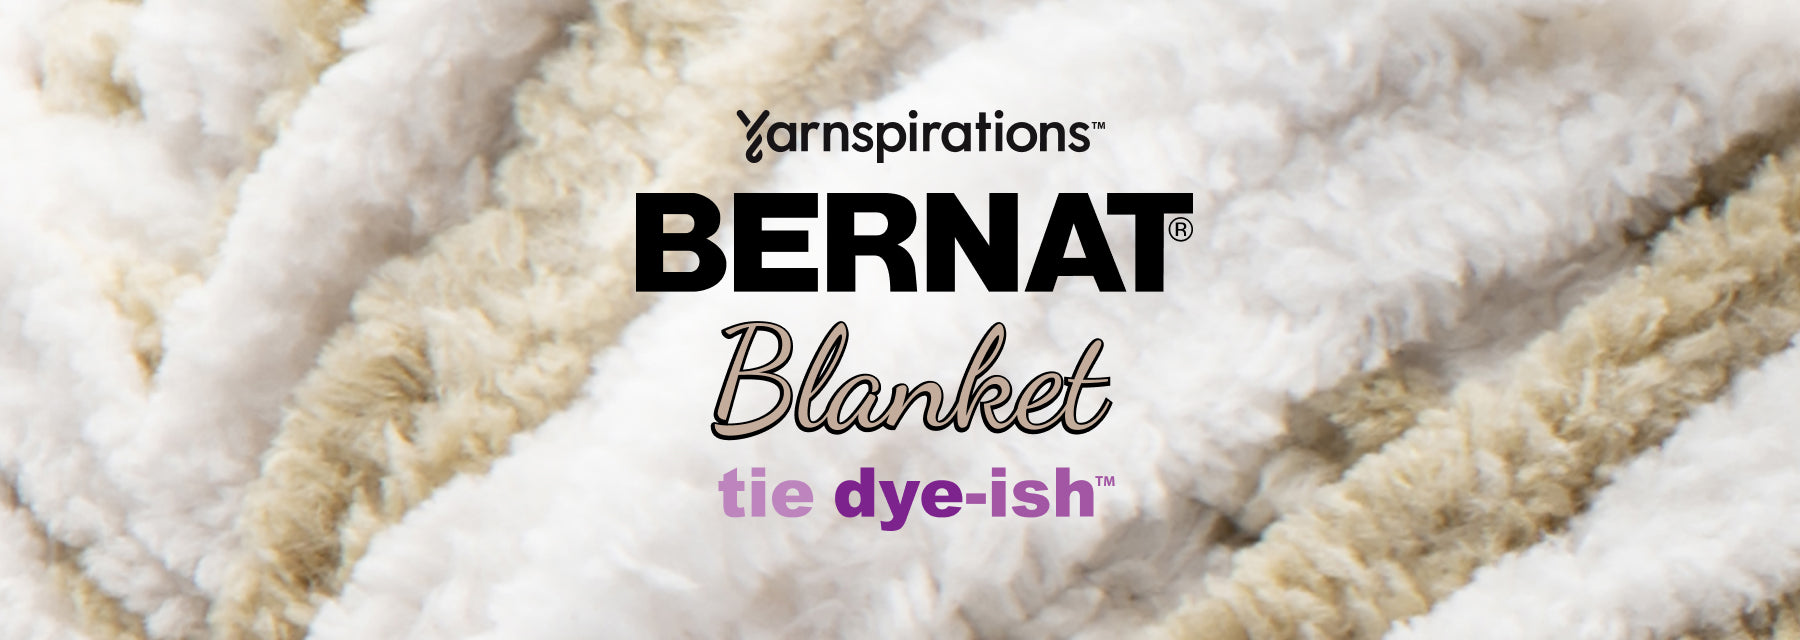 Bernat Blanket Tie Dye Ish Yarn Tropical Sea